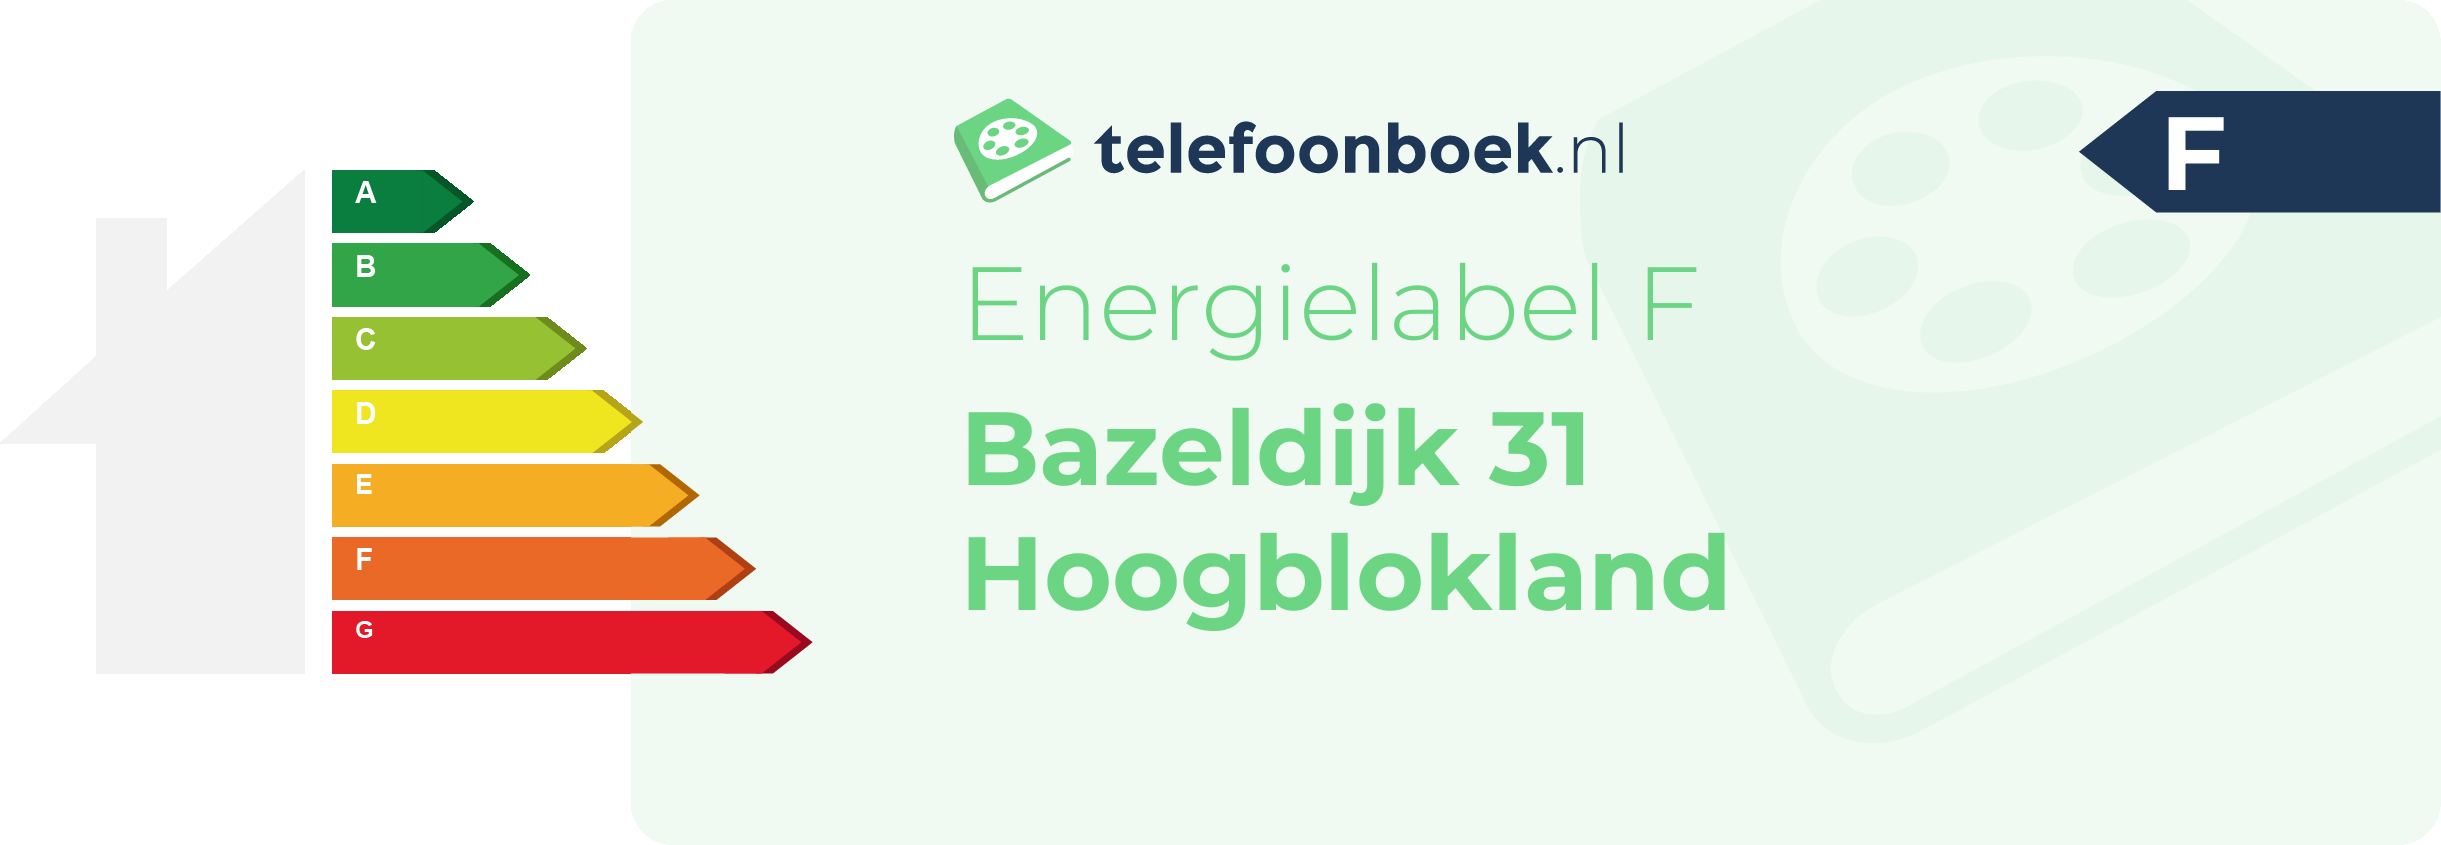 Energielabel Bazeldijk 31 Hoogblokland